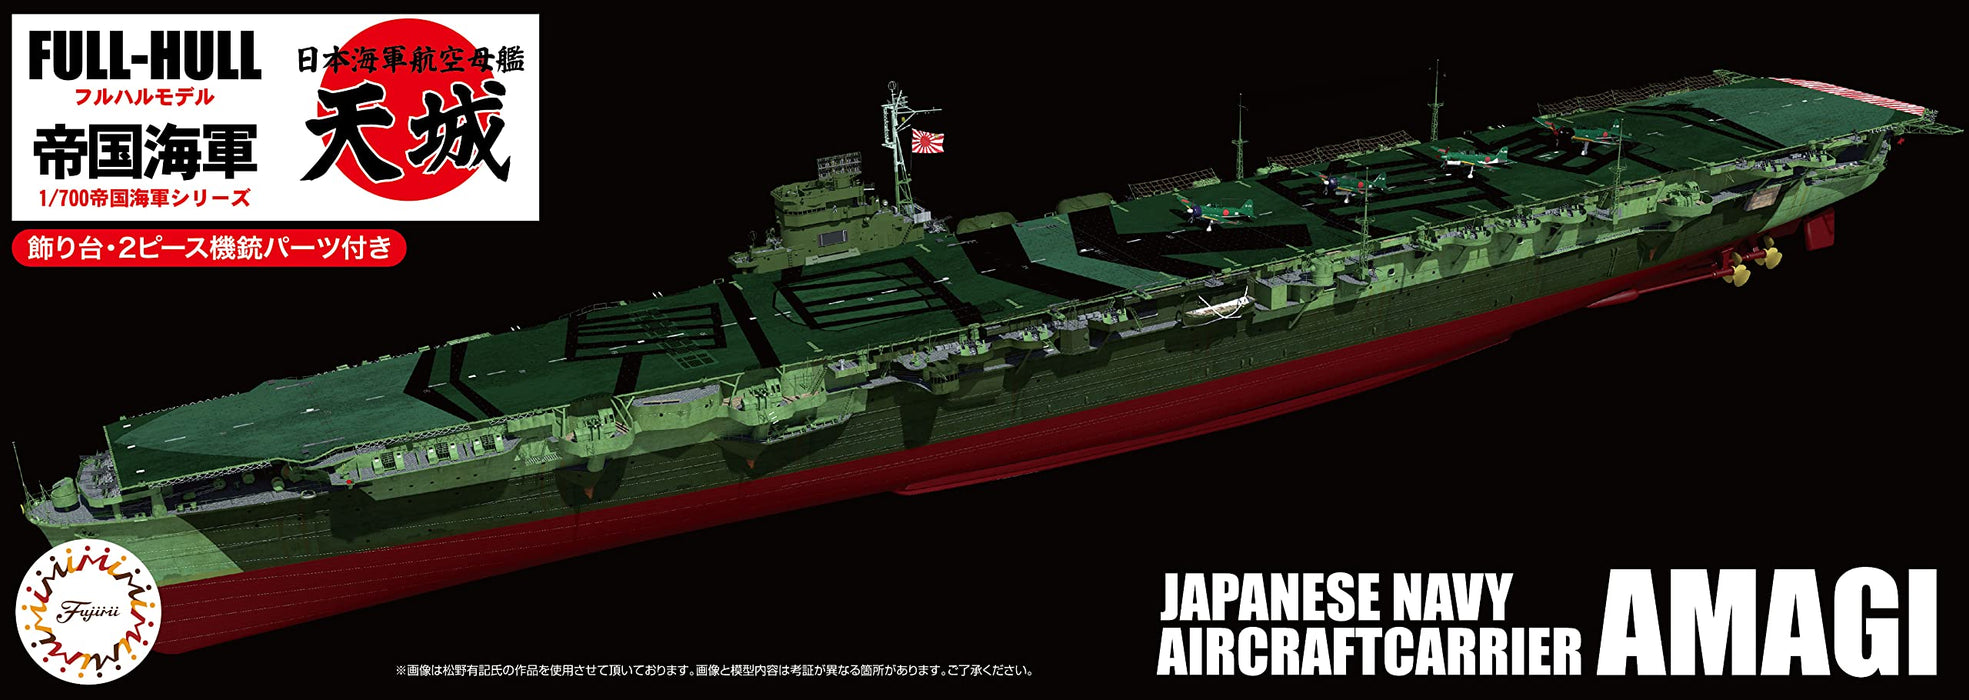 Fujimi modèle 1/700 série de la marine impériale japonaise n°41 porte-avions de la marine japonaise Amagi coque complète modèle Fh-41